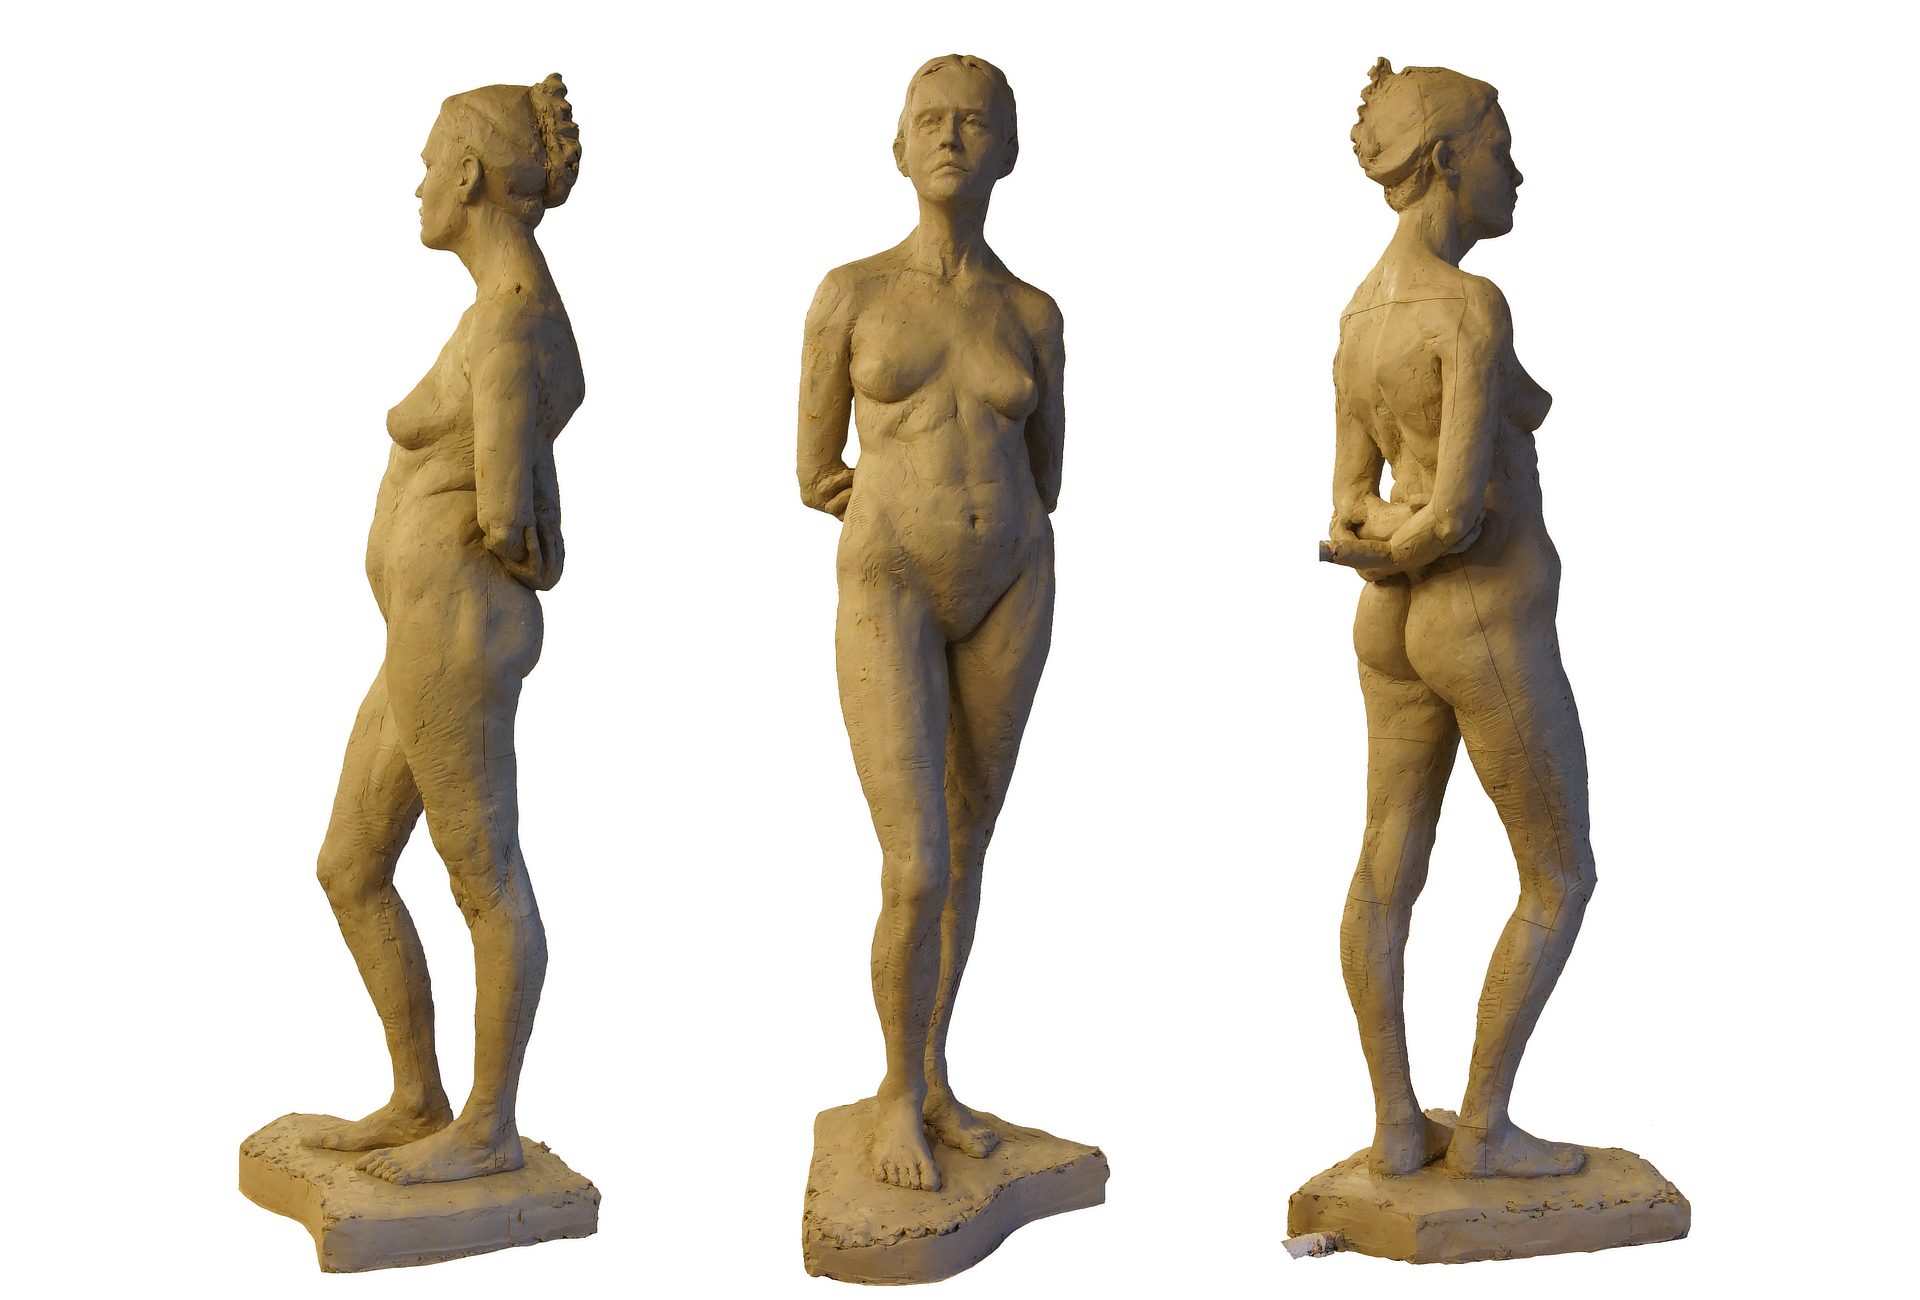 Zdjęcie przedstawia rzeźbę stojącej w kontrapoście nagiej młodej kobiety. Twarz postaci jest lekko skręcona w prawą stronę, włosy są spięte w kok z tyłu głowy, ręce schowane są za plecami, ciężar ciała rozłożony jest na lewej nodze. Pod stopami znajduje się podstawa o kształcie przypominającym wieko fortepianu. Rzeźba przedstawiona została z trzech perspektyw: lewy profil, en face oraz prawy profil.